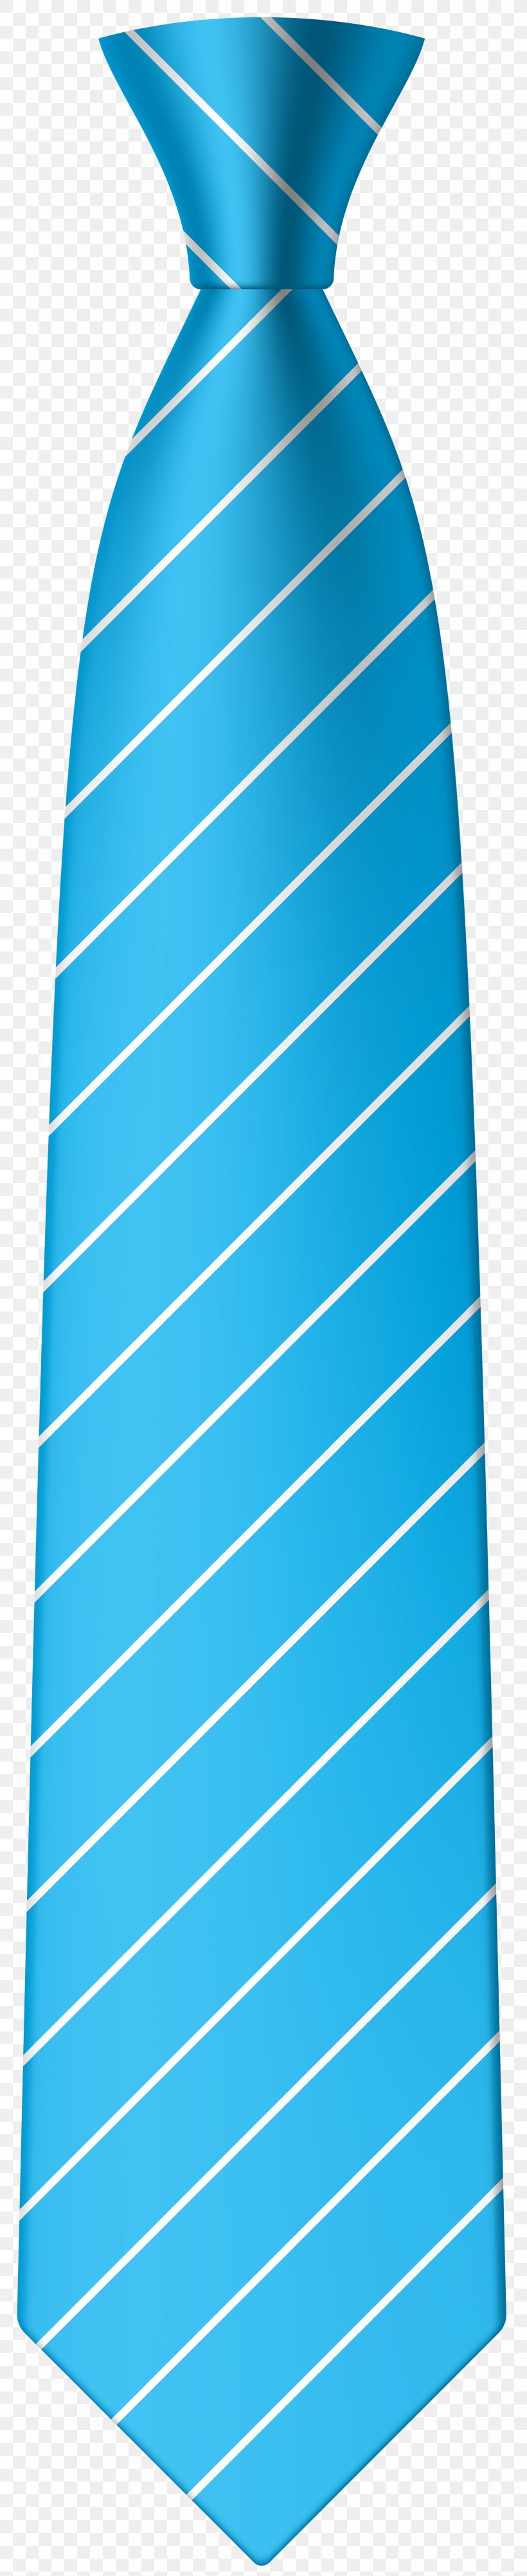 Necktie Tie Clip Bow Tie Clip Art, PNG, 1637x8000px, Necktie, Aqua, Black Tie, Blue, Bow Tie Download Free